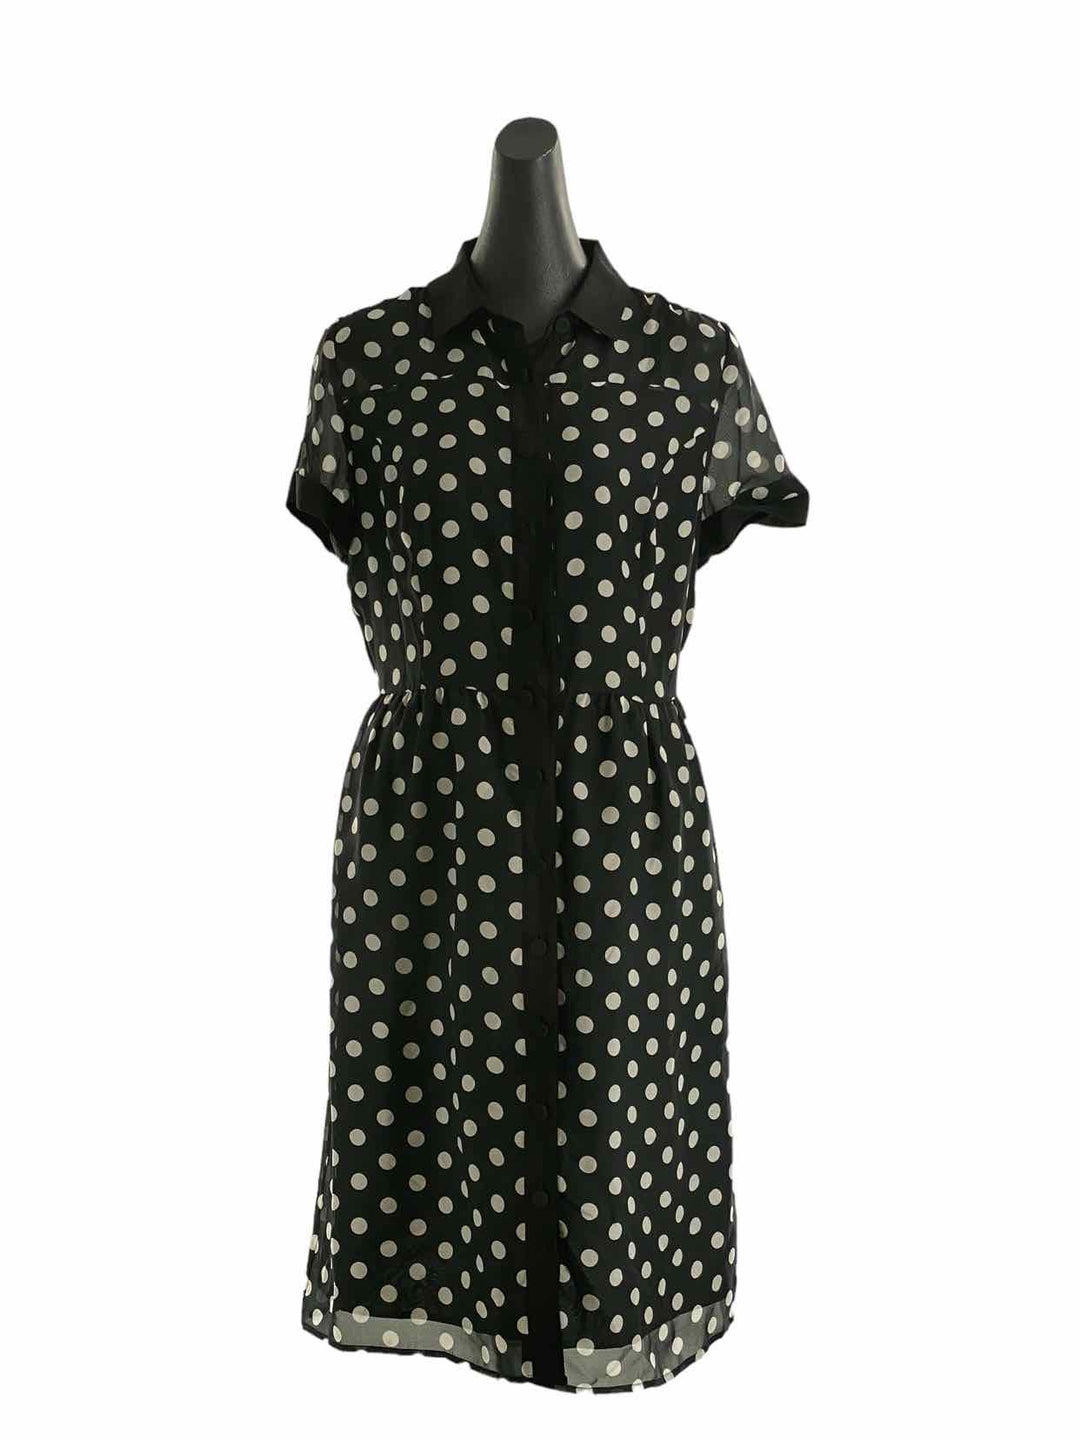 J. Peterman Size 8 Black White Polka Dot Dress